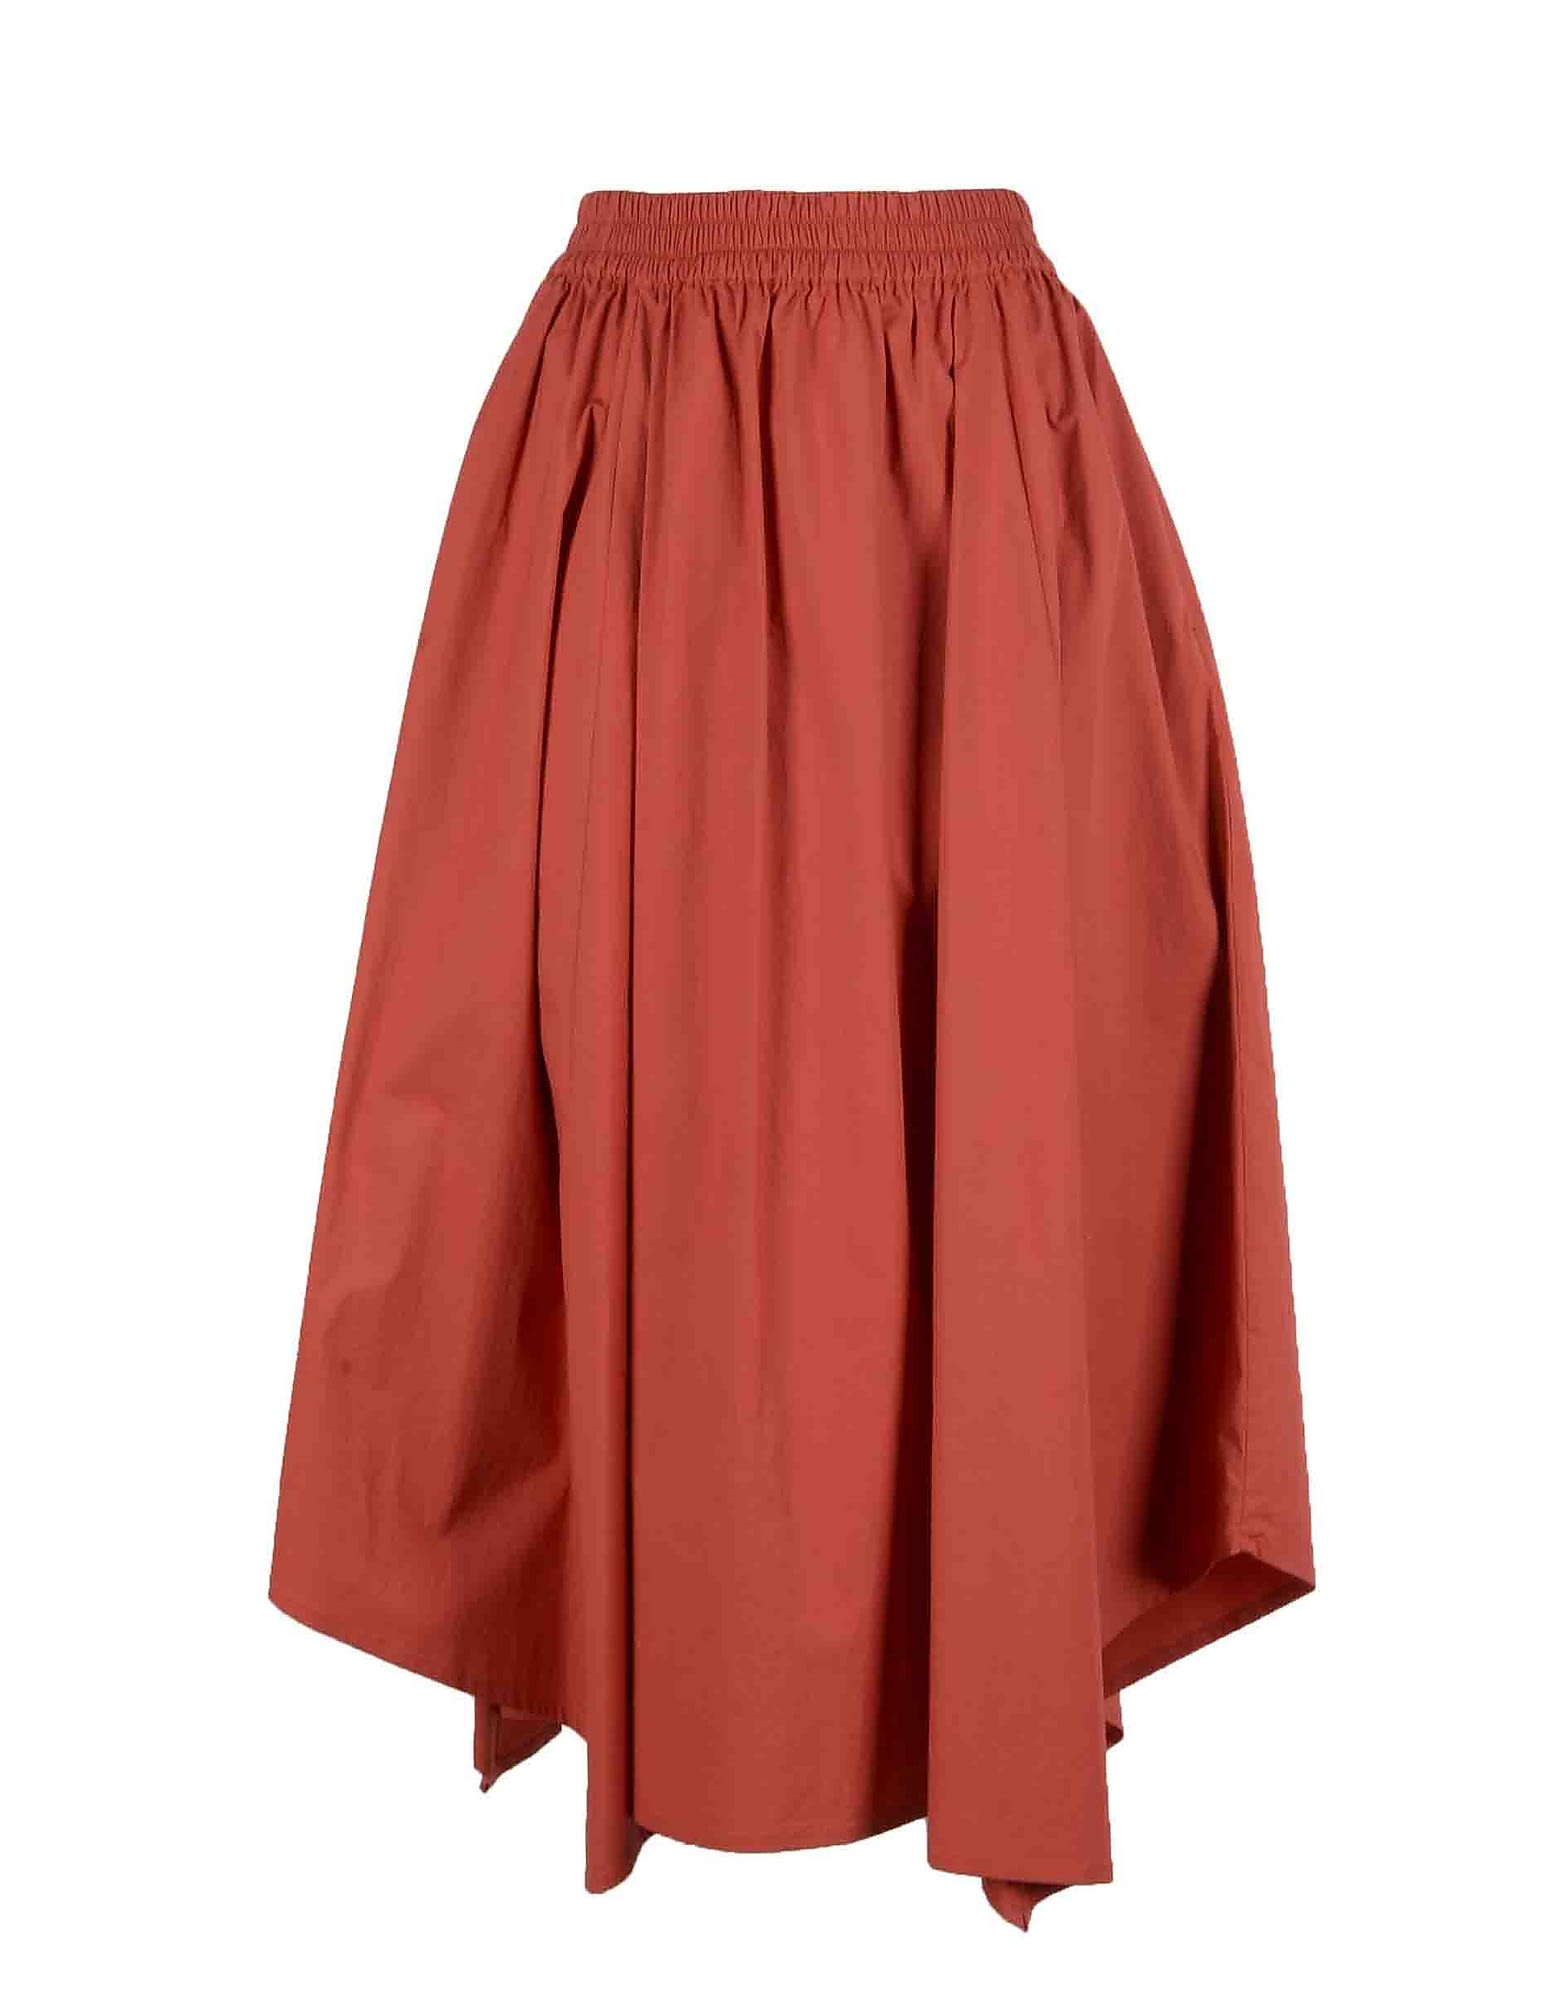 Lorena Antoniazzi Womens Rust Skirt